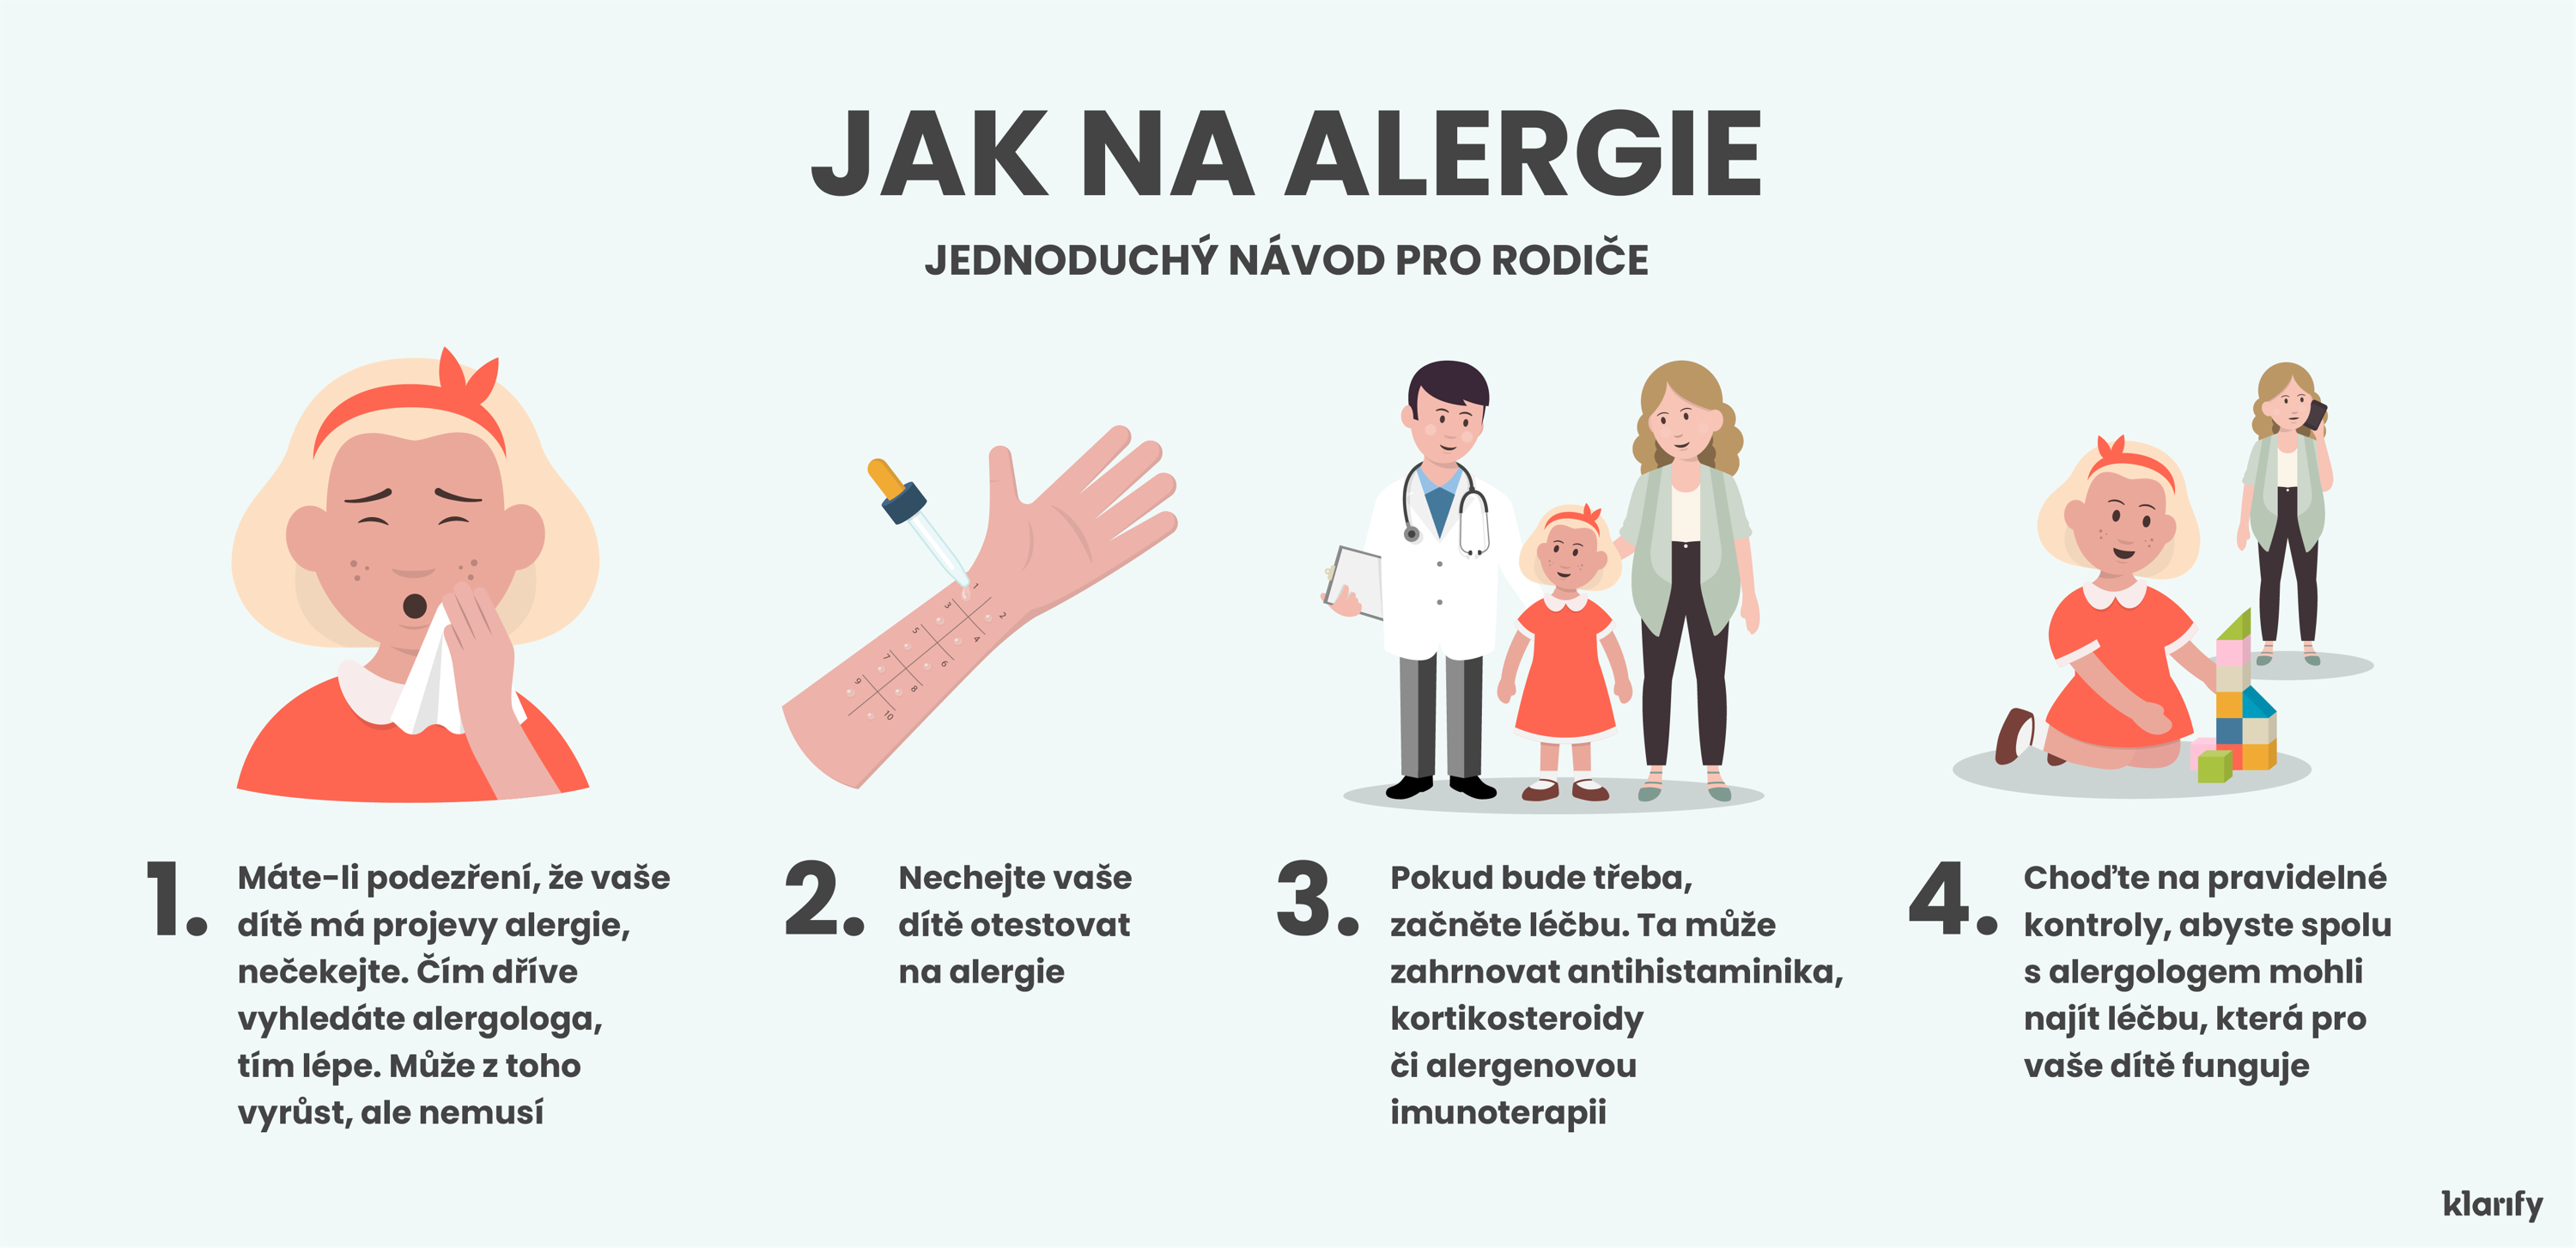  Jak na alergie – jednoduchý návod pro rodiče. Na obrázku jsou 4 kroky od rozpoznání příznaků u vašeho dítěte až po spolupráci s vaším lékařem při hledání nejlepší možné léčby.